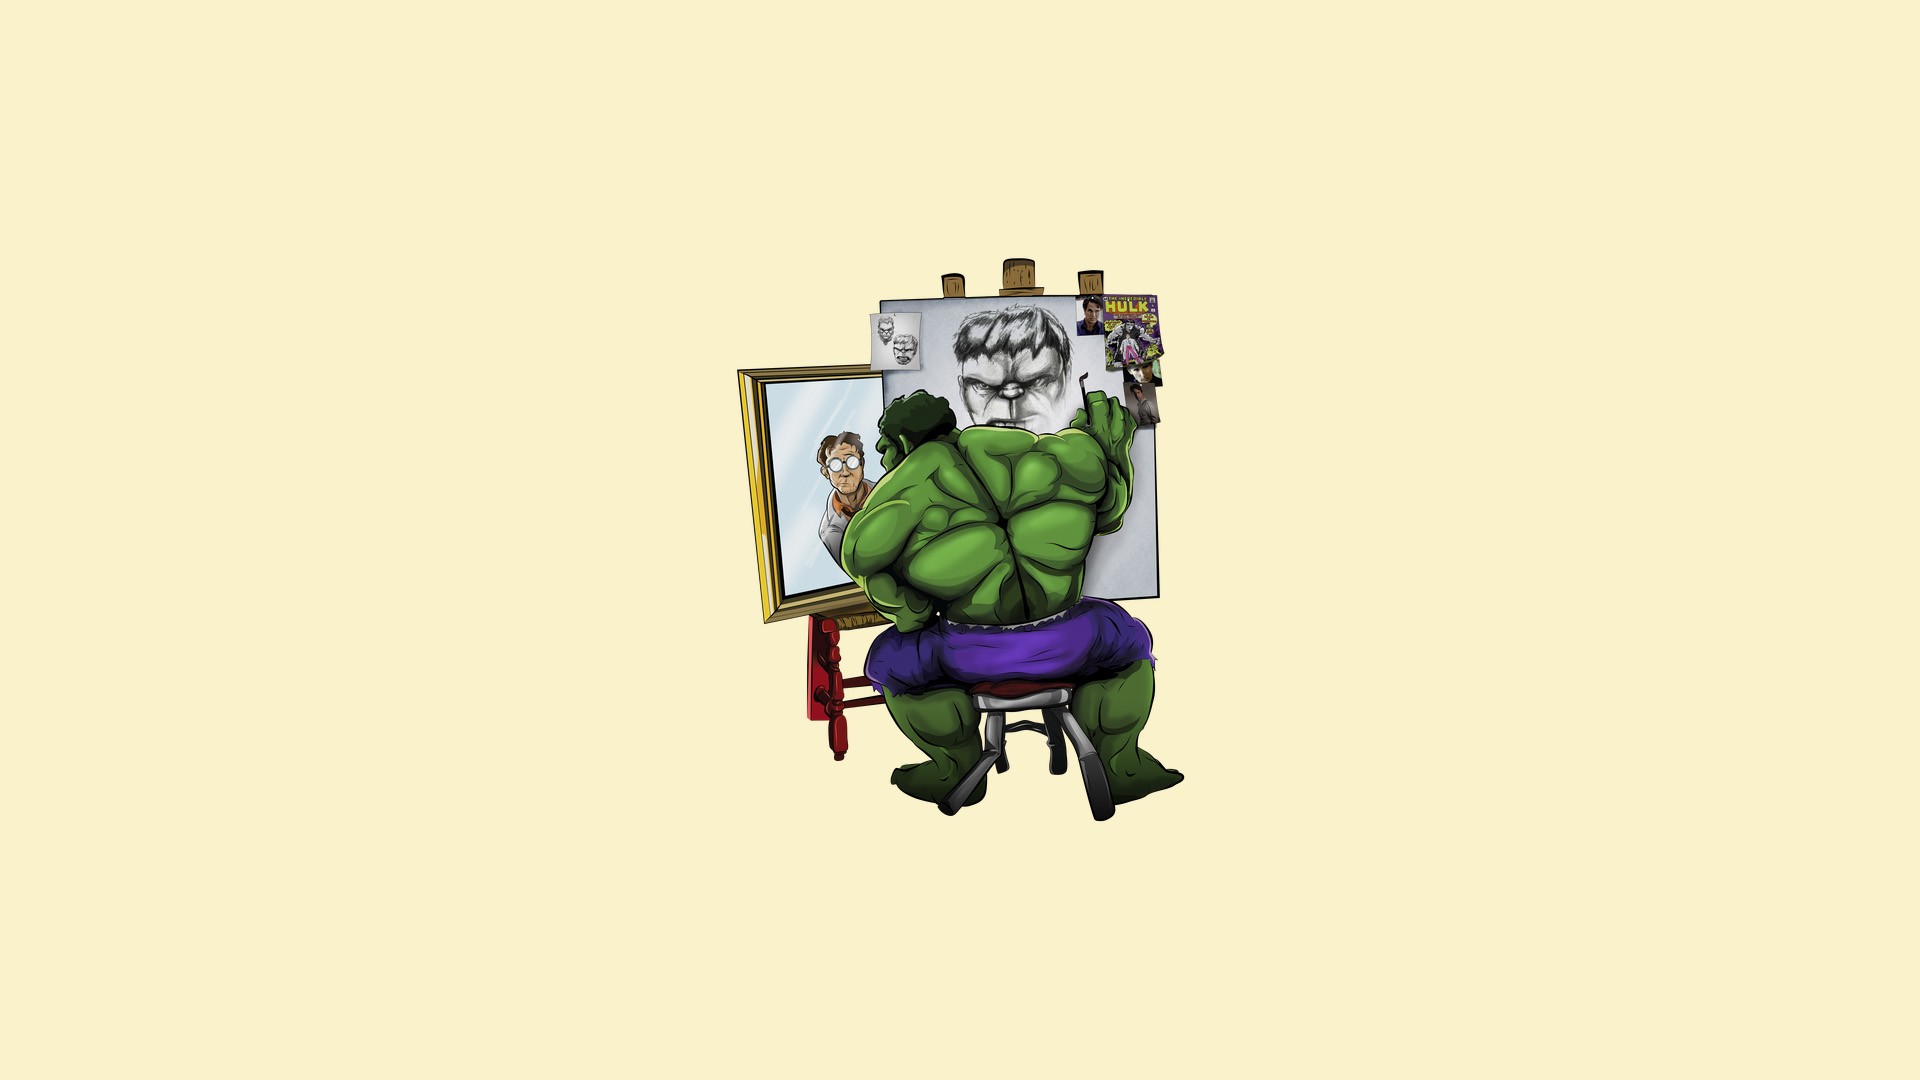 fond d'écran hulk,dessin animé,personnage fictif,illustration,animation,conception graphique